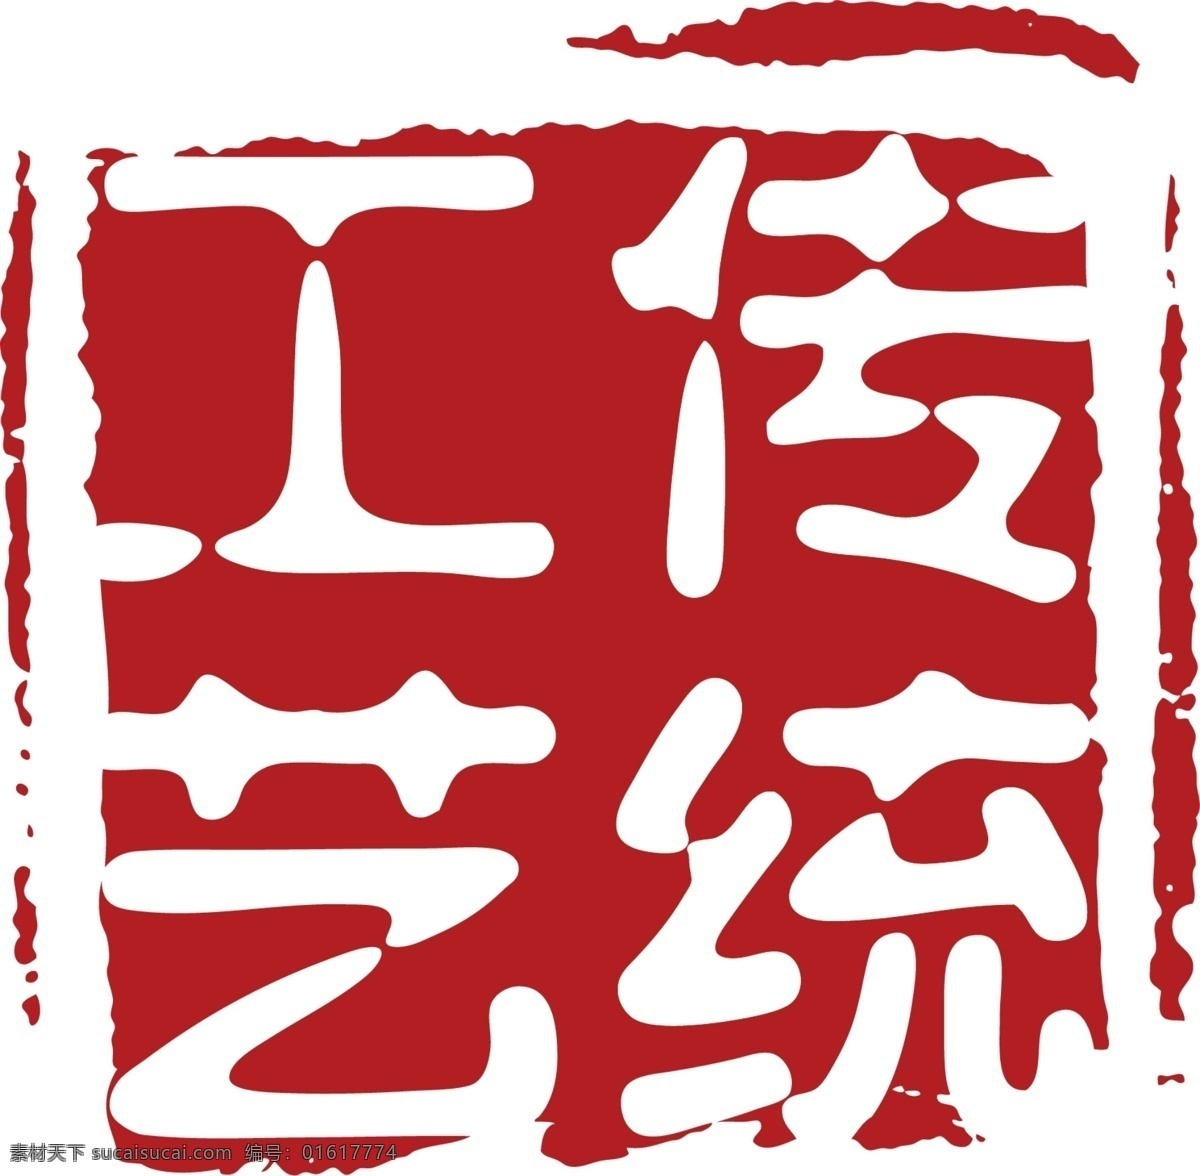 传统工艺 国风 印章 喜庆 中式 长方形 不规则图形 中国风 水墨风 不规则印章 中国古典元素 中国印章 中国传统 印章中国 红色 素材图